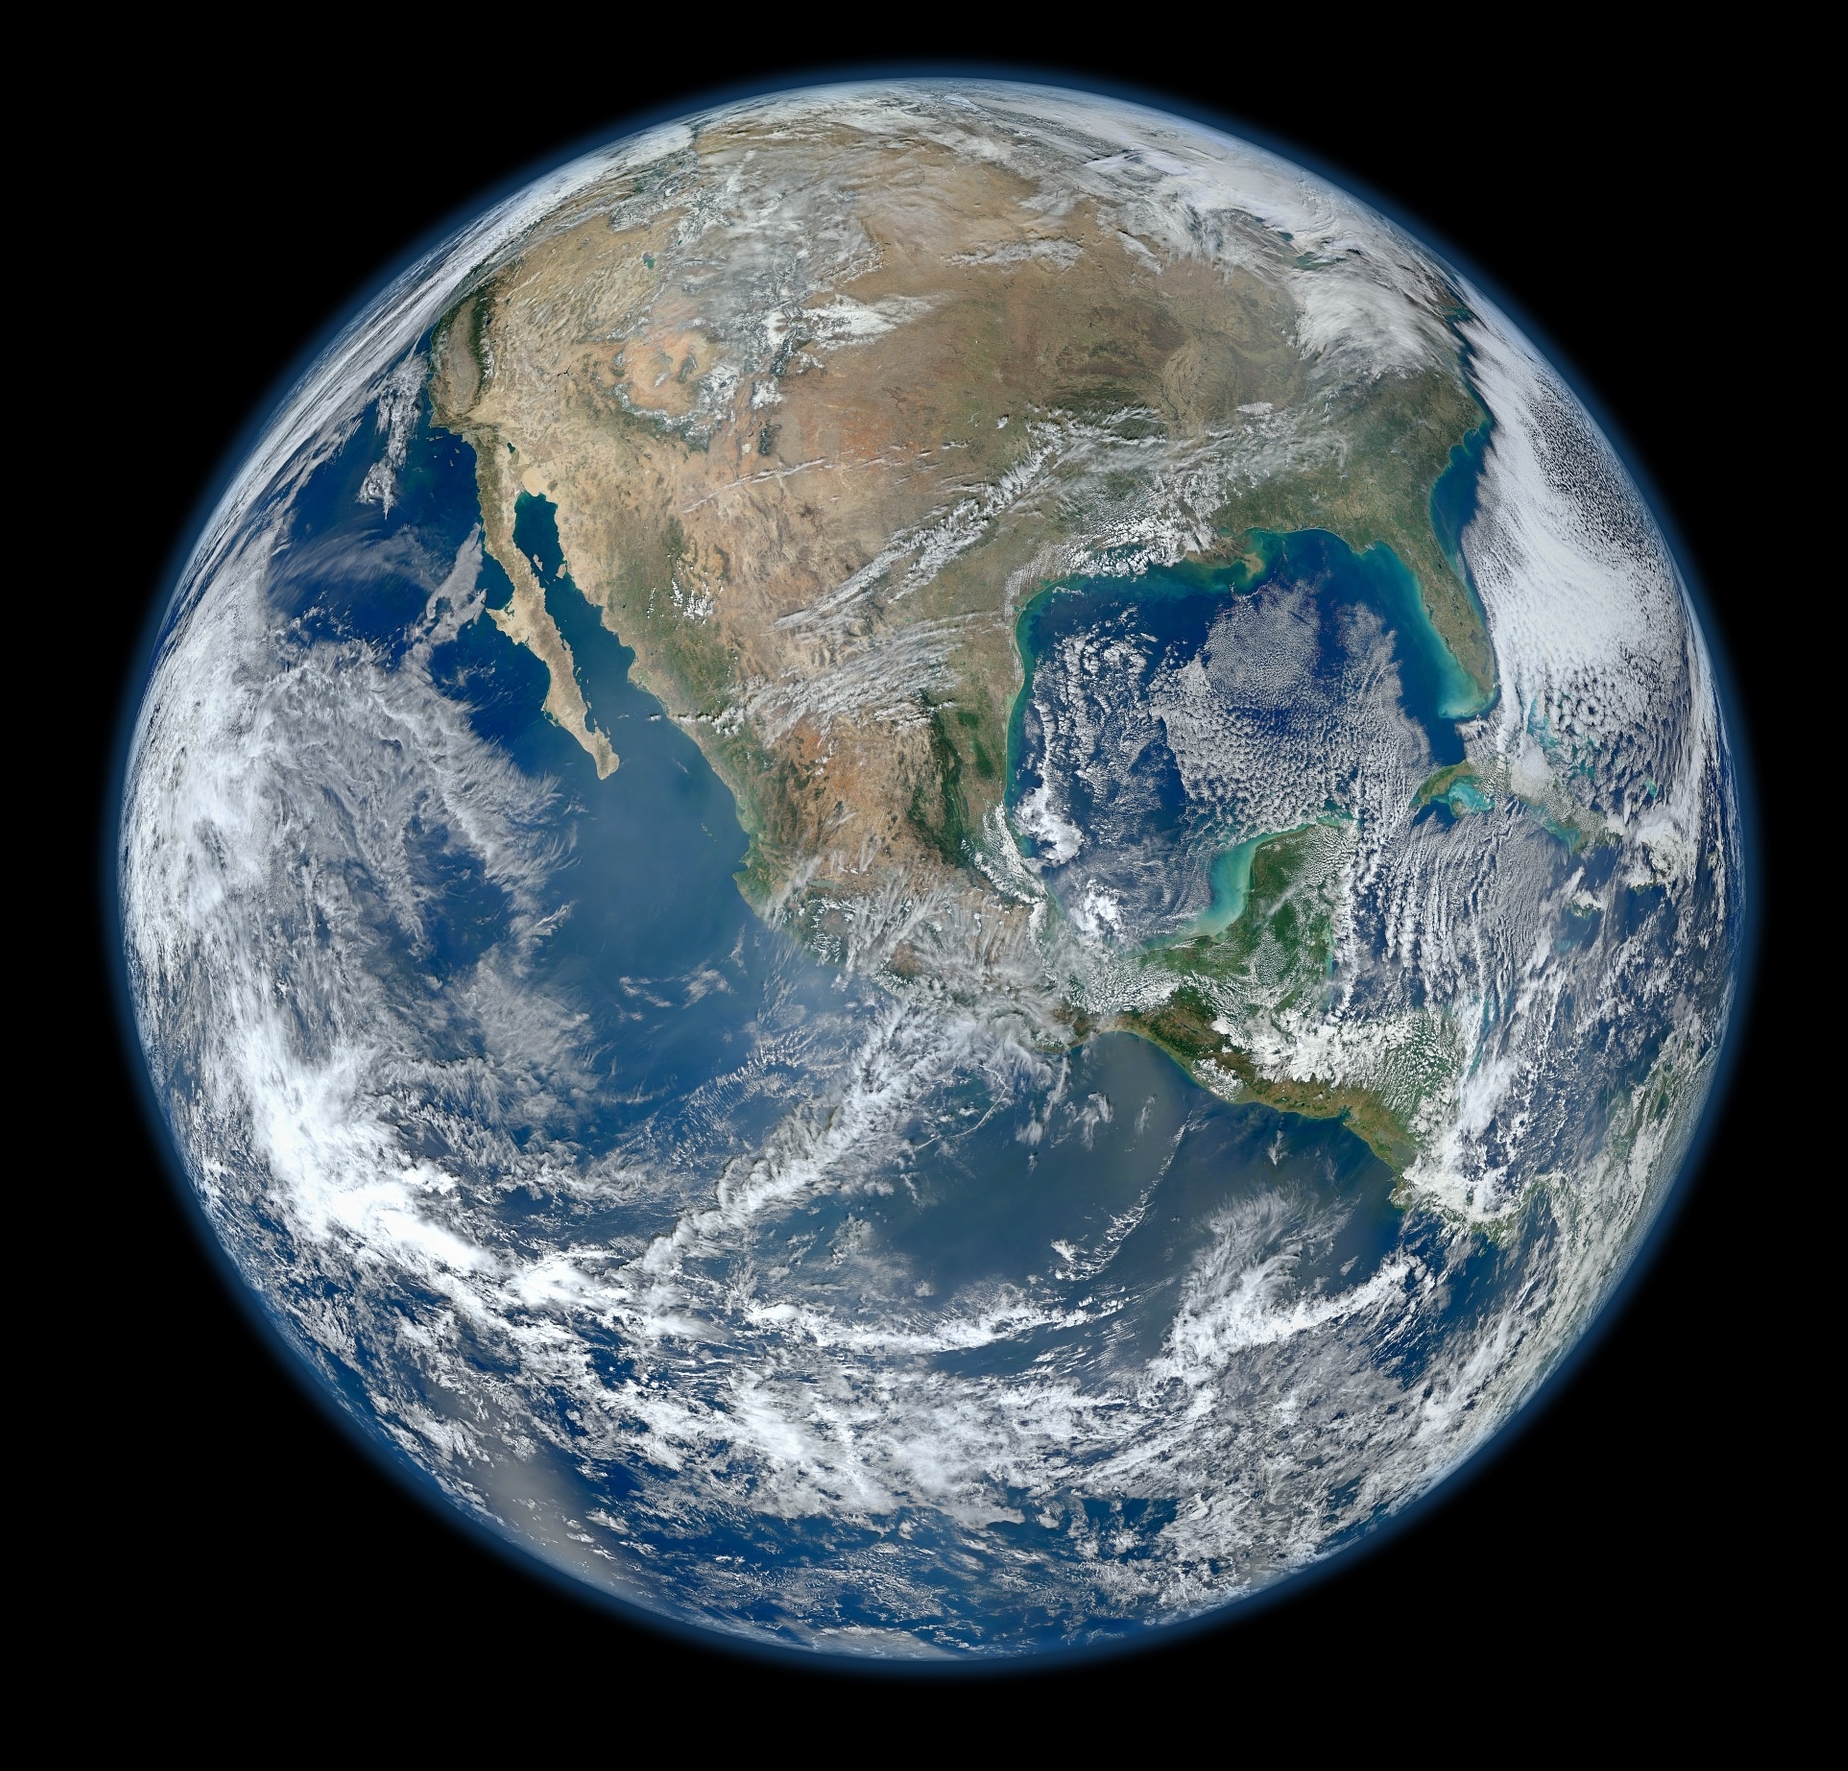 Rubrik_Klima_und_Energie_Planet_Erde_c._Pixabay_world-549425_1920